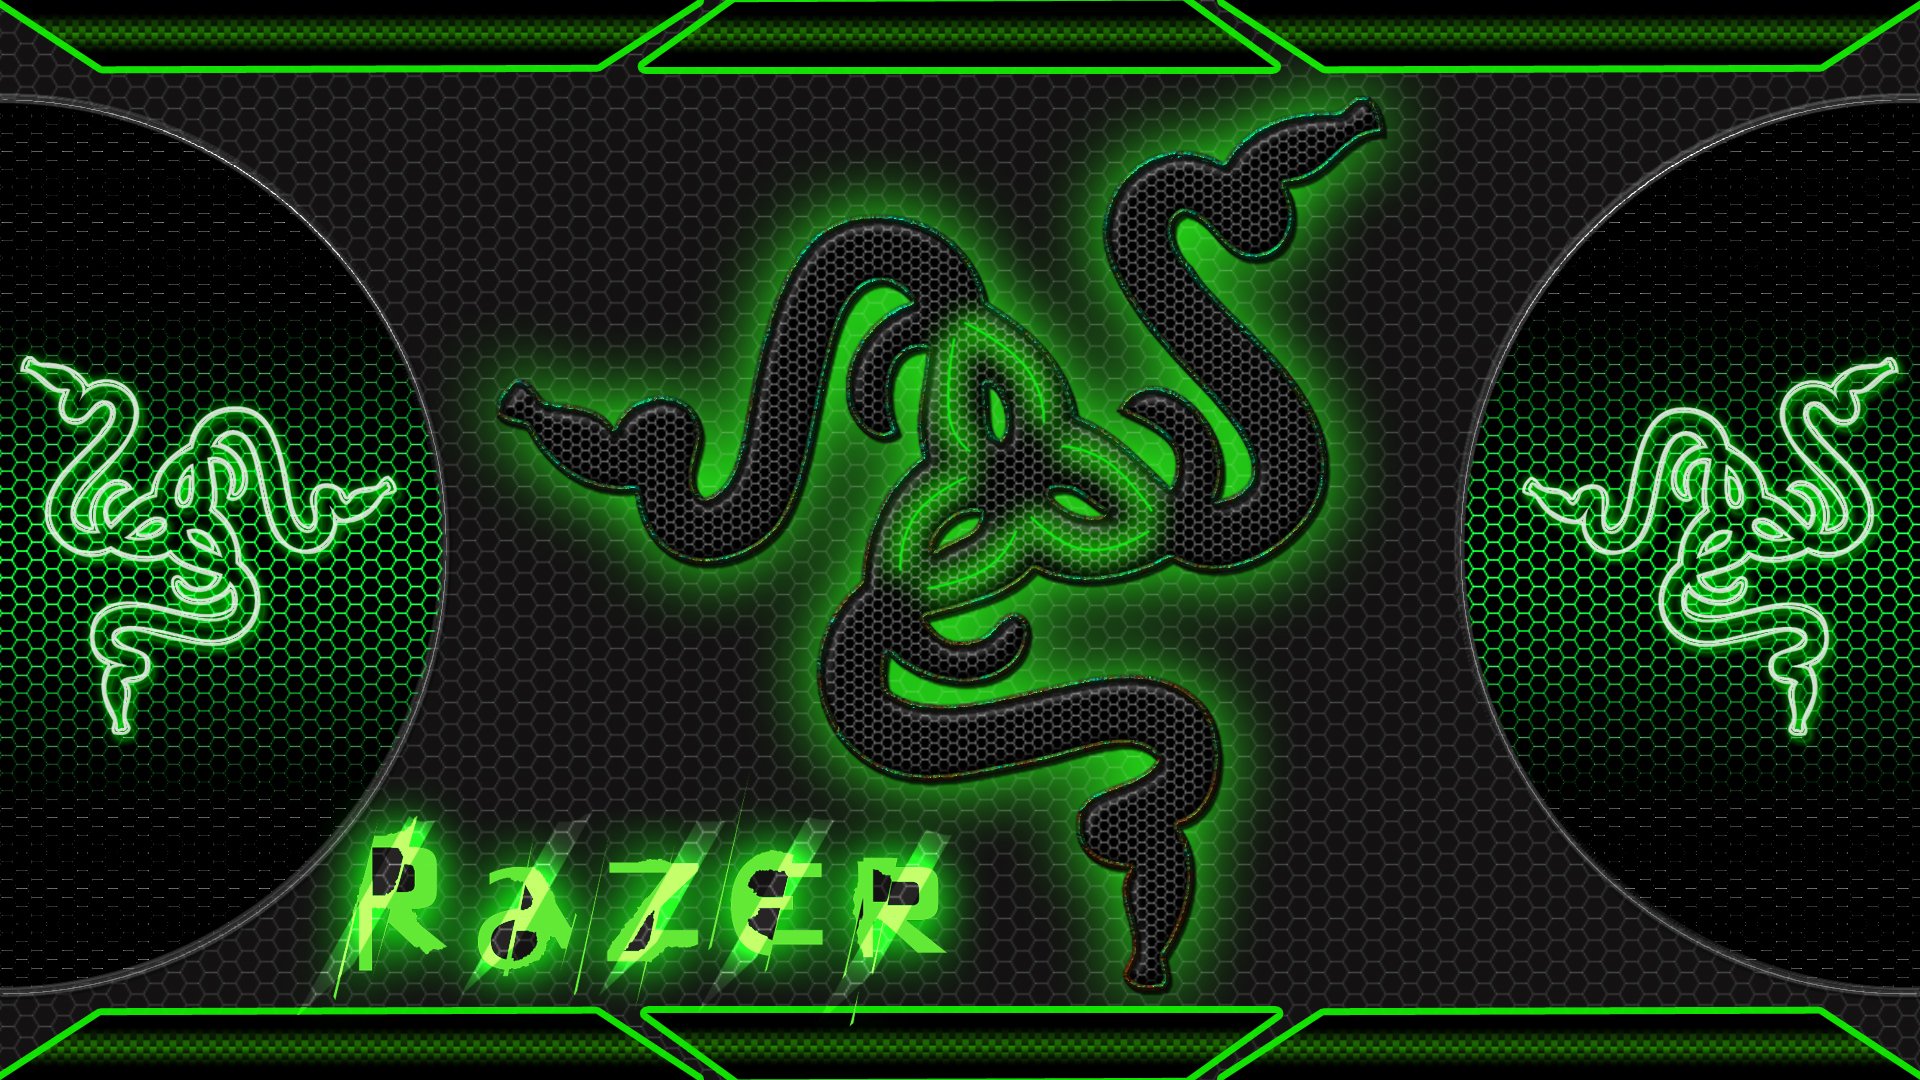 Razer Gaming Puter Game Wallpaper Background